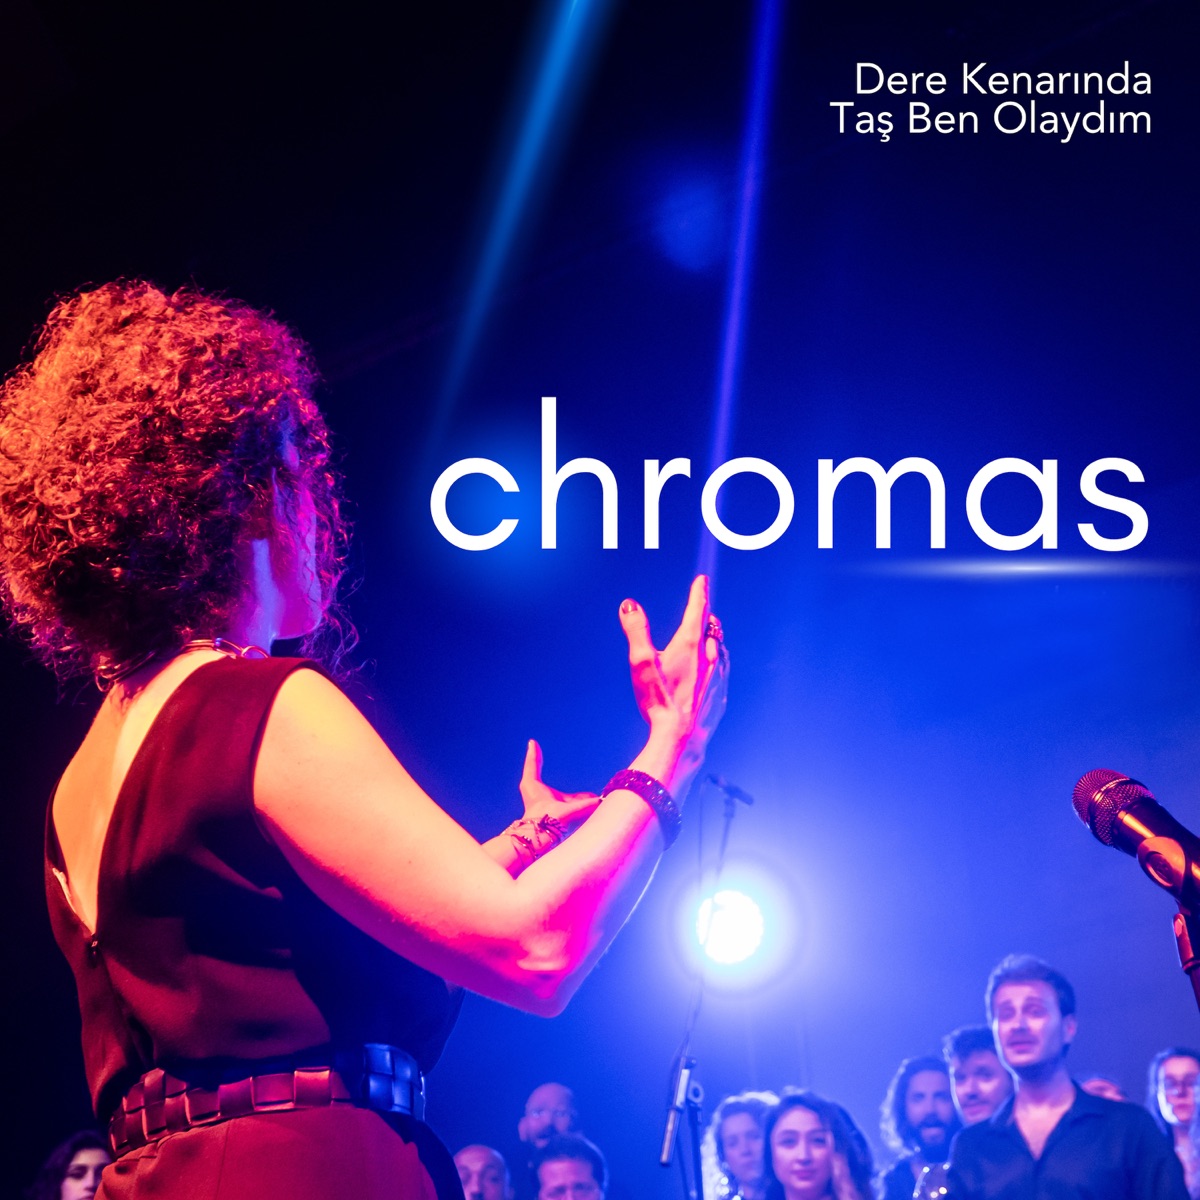 Dere Kenarında Taş Ben Olaydım - Single - Album by Chromas - Apple Music